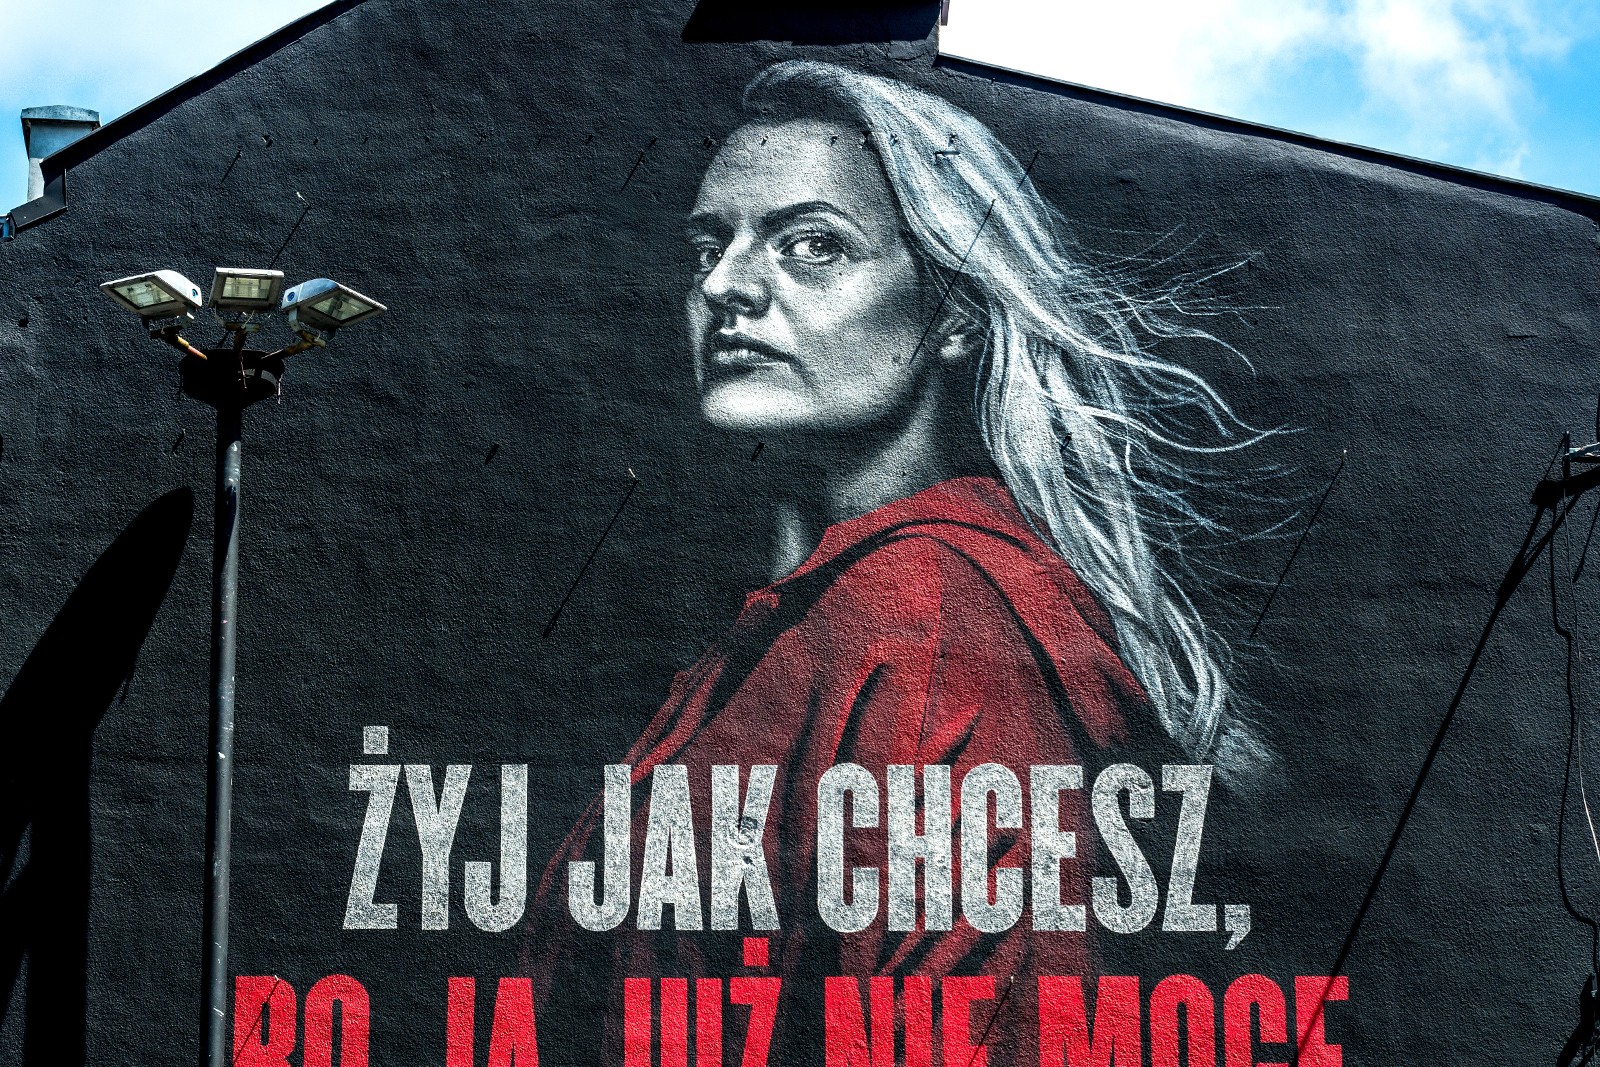 Mural reklamowy Opowieść podręcznej ul.Jaworzyńska 9 w Warszawie | Opowieść podręcznej | Portfolio